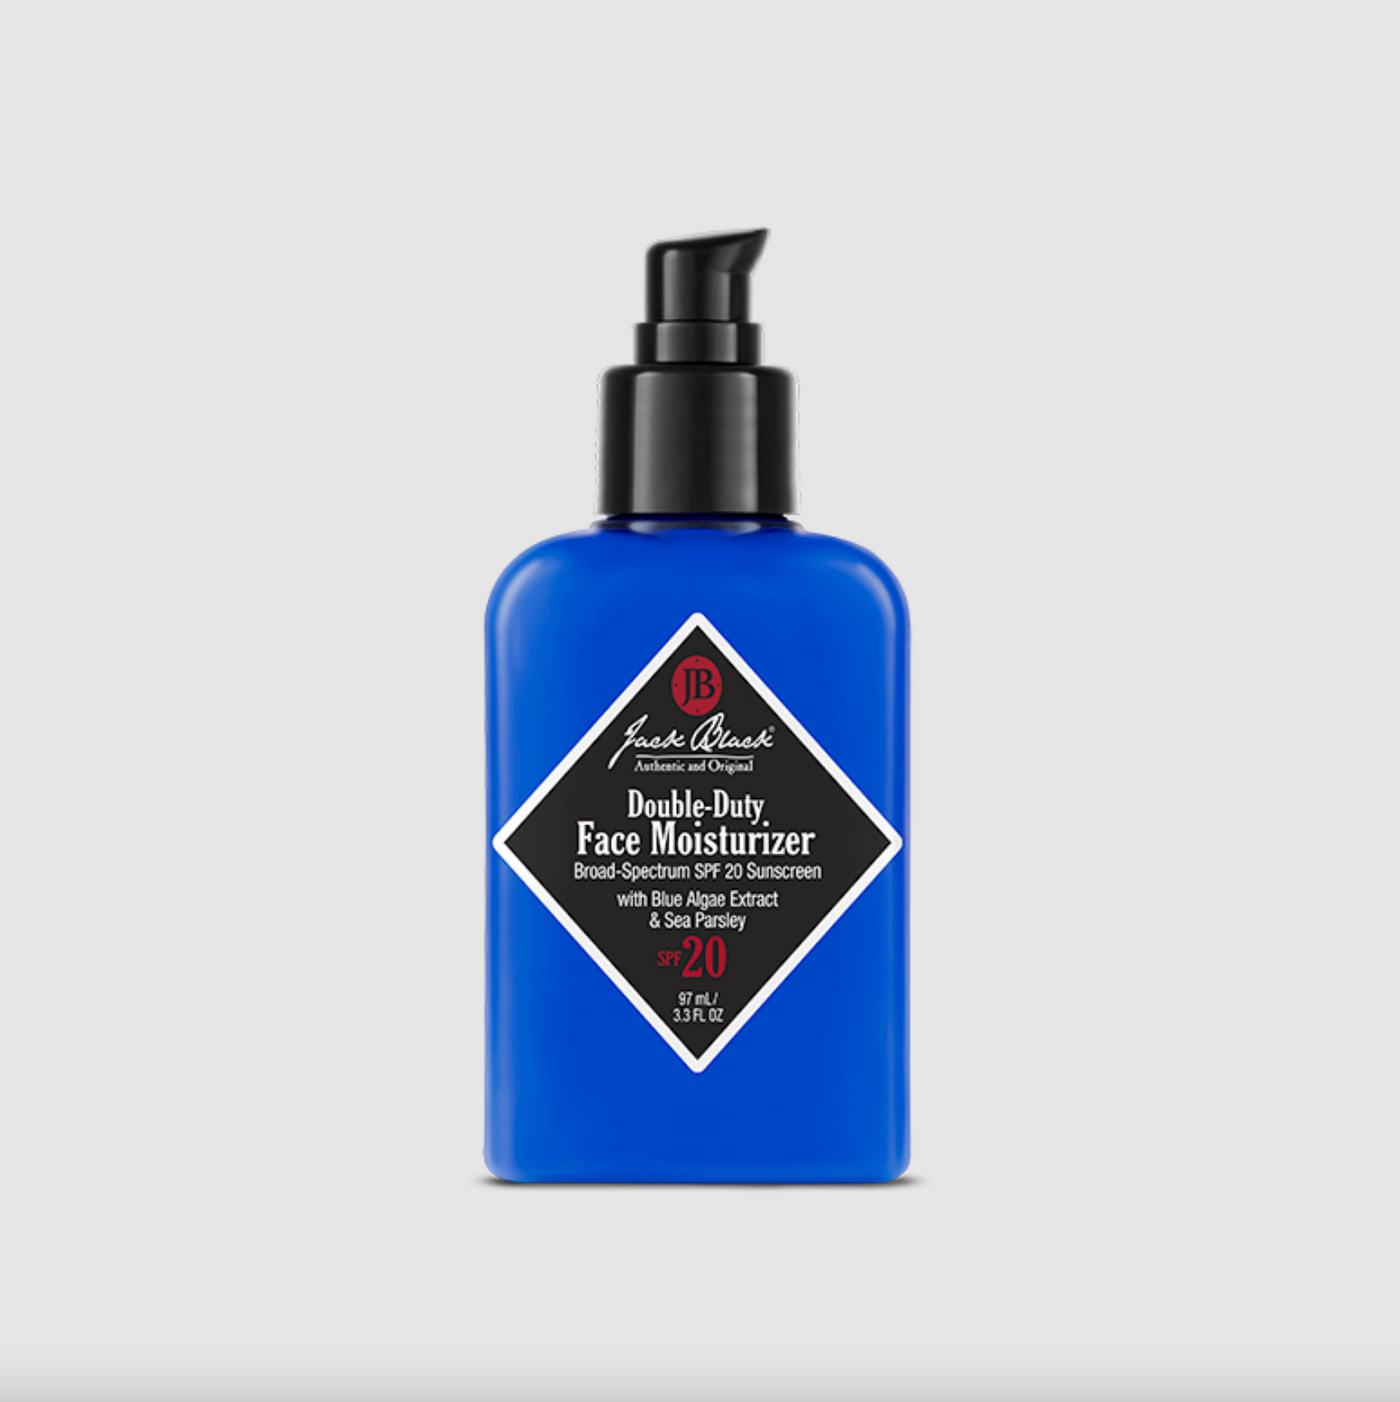 Jack Black - Double-Duty Face moisturizer SPF 20 - 3.3 oz